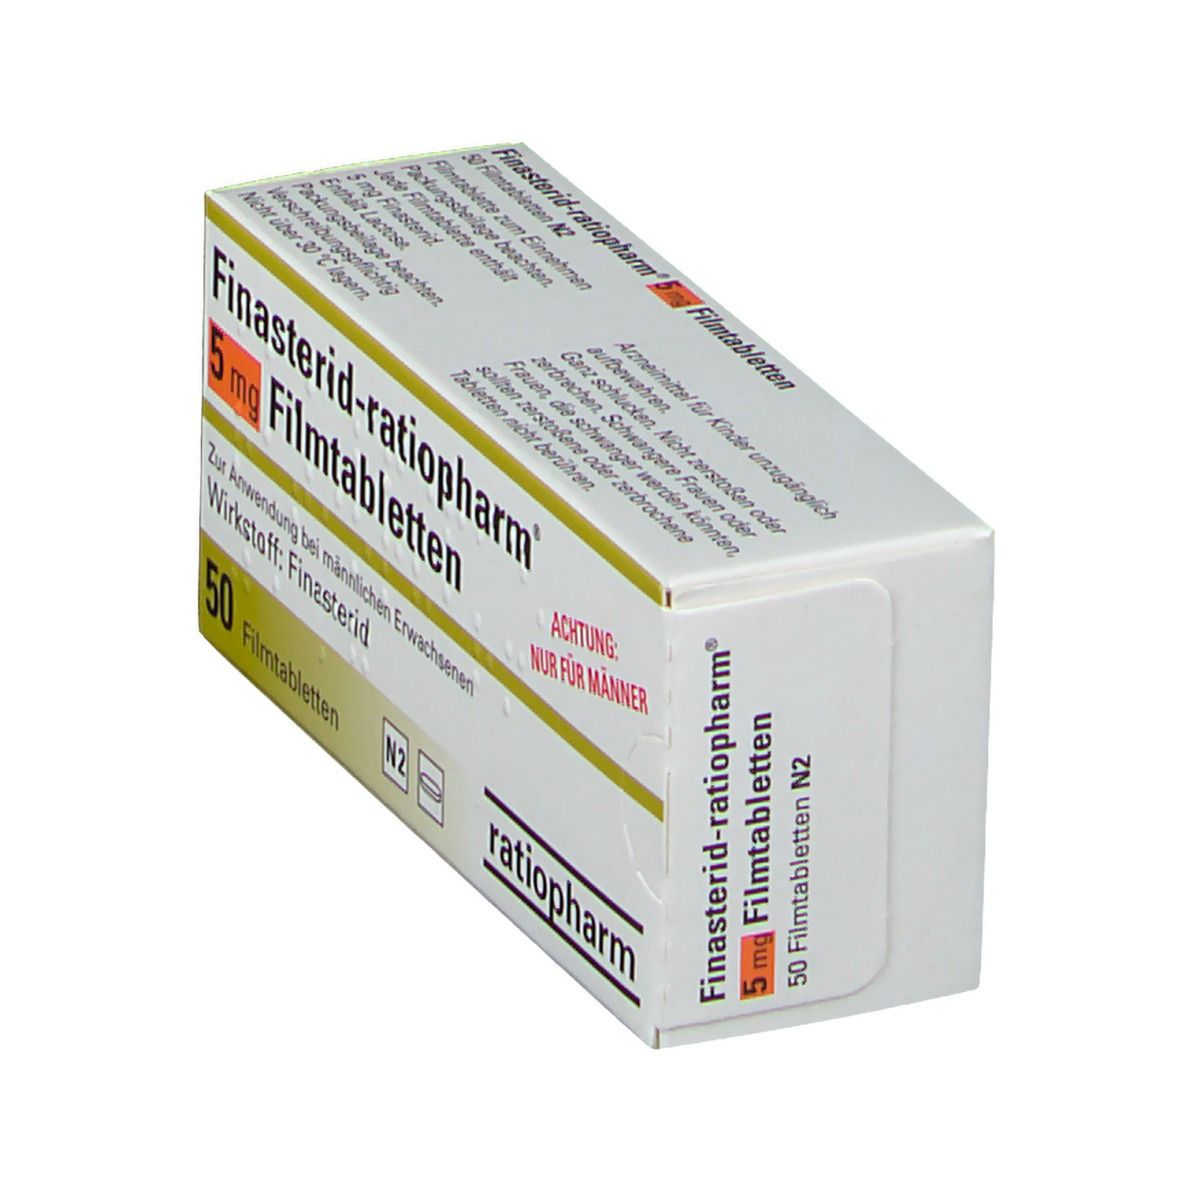 Finasterid-ratiopharm 5 mg